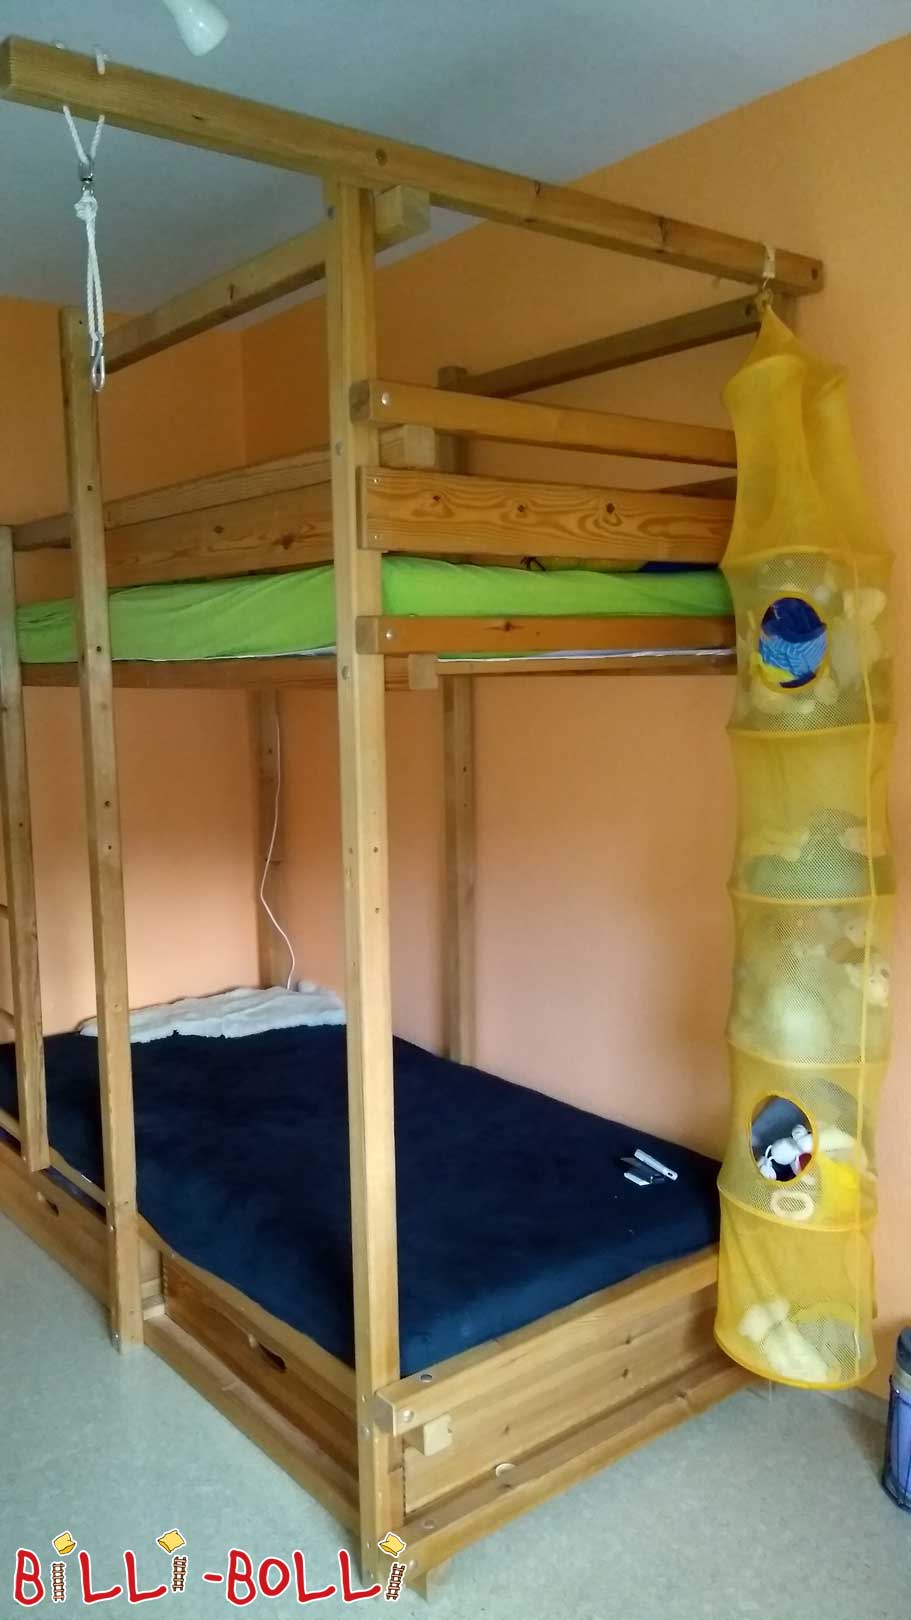 Gullibo ágy, 90 x 200 cm (Kategória: Használt gyermekbútorok)